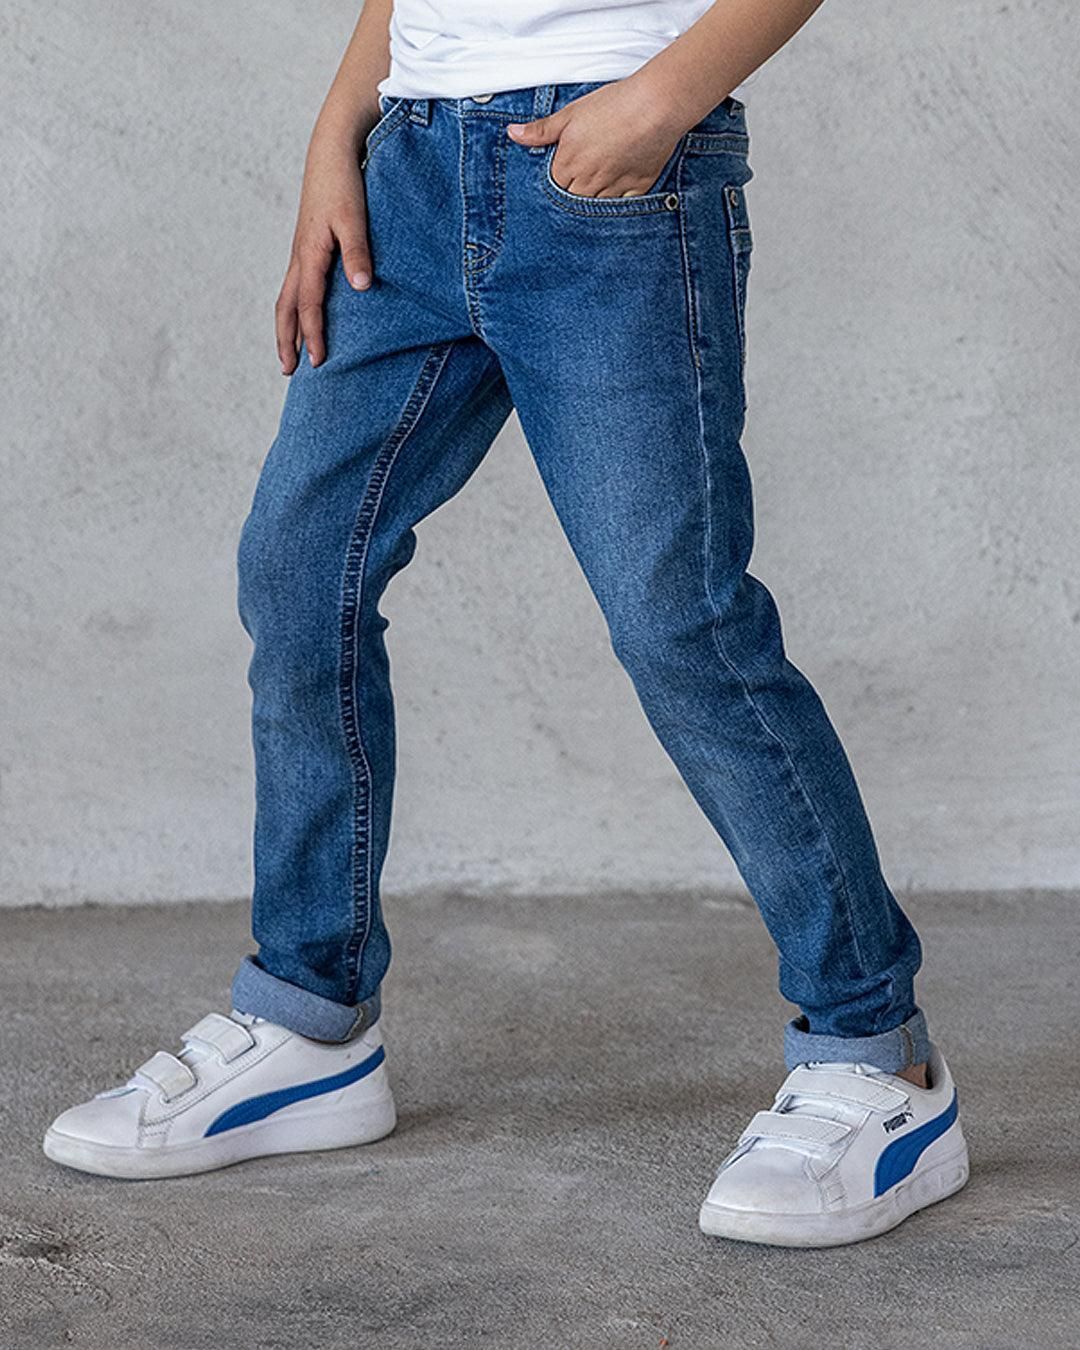 Broek Skinny fit jeans medium used